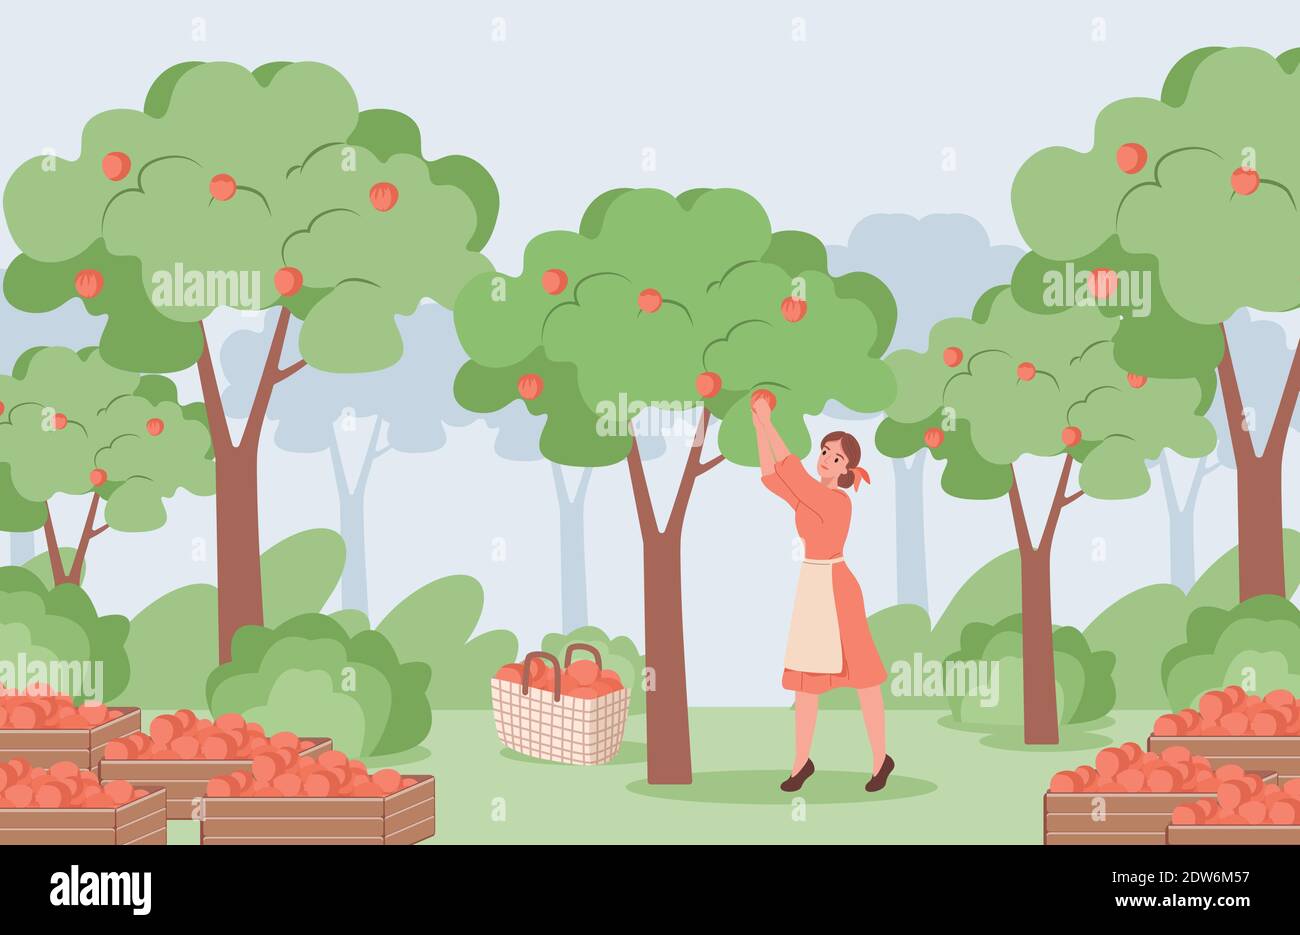 Junge Frau in roten Kleid und weiße Schürze pflücken roten reifen Äpfeln aus Apfelbäumen Vektor flache Illustration. Apfelgarten mit Bäumen und Kisten mit Apfel, sommerliches Erntekonzept. Stock Vektor